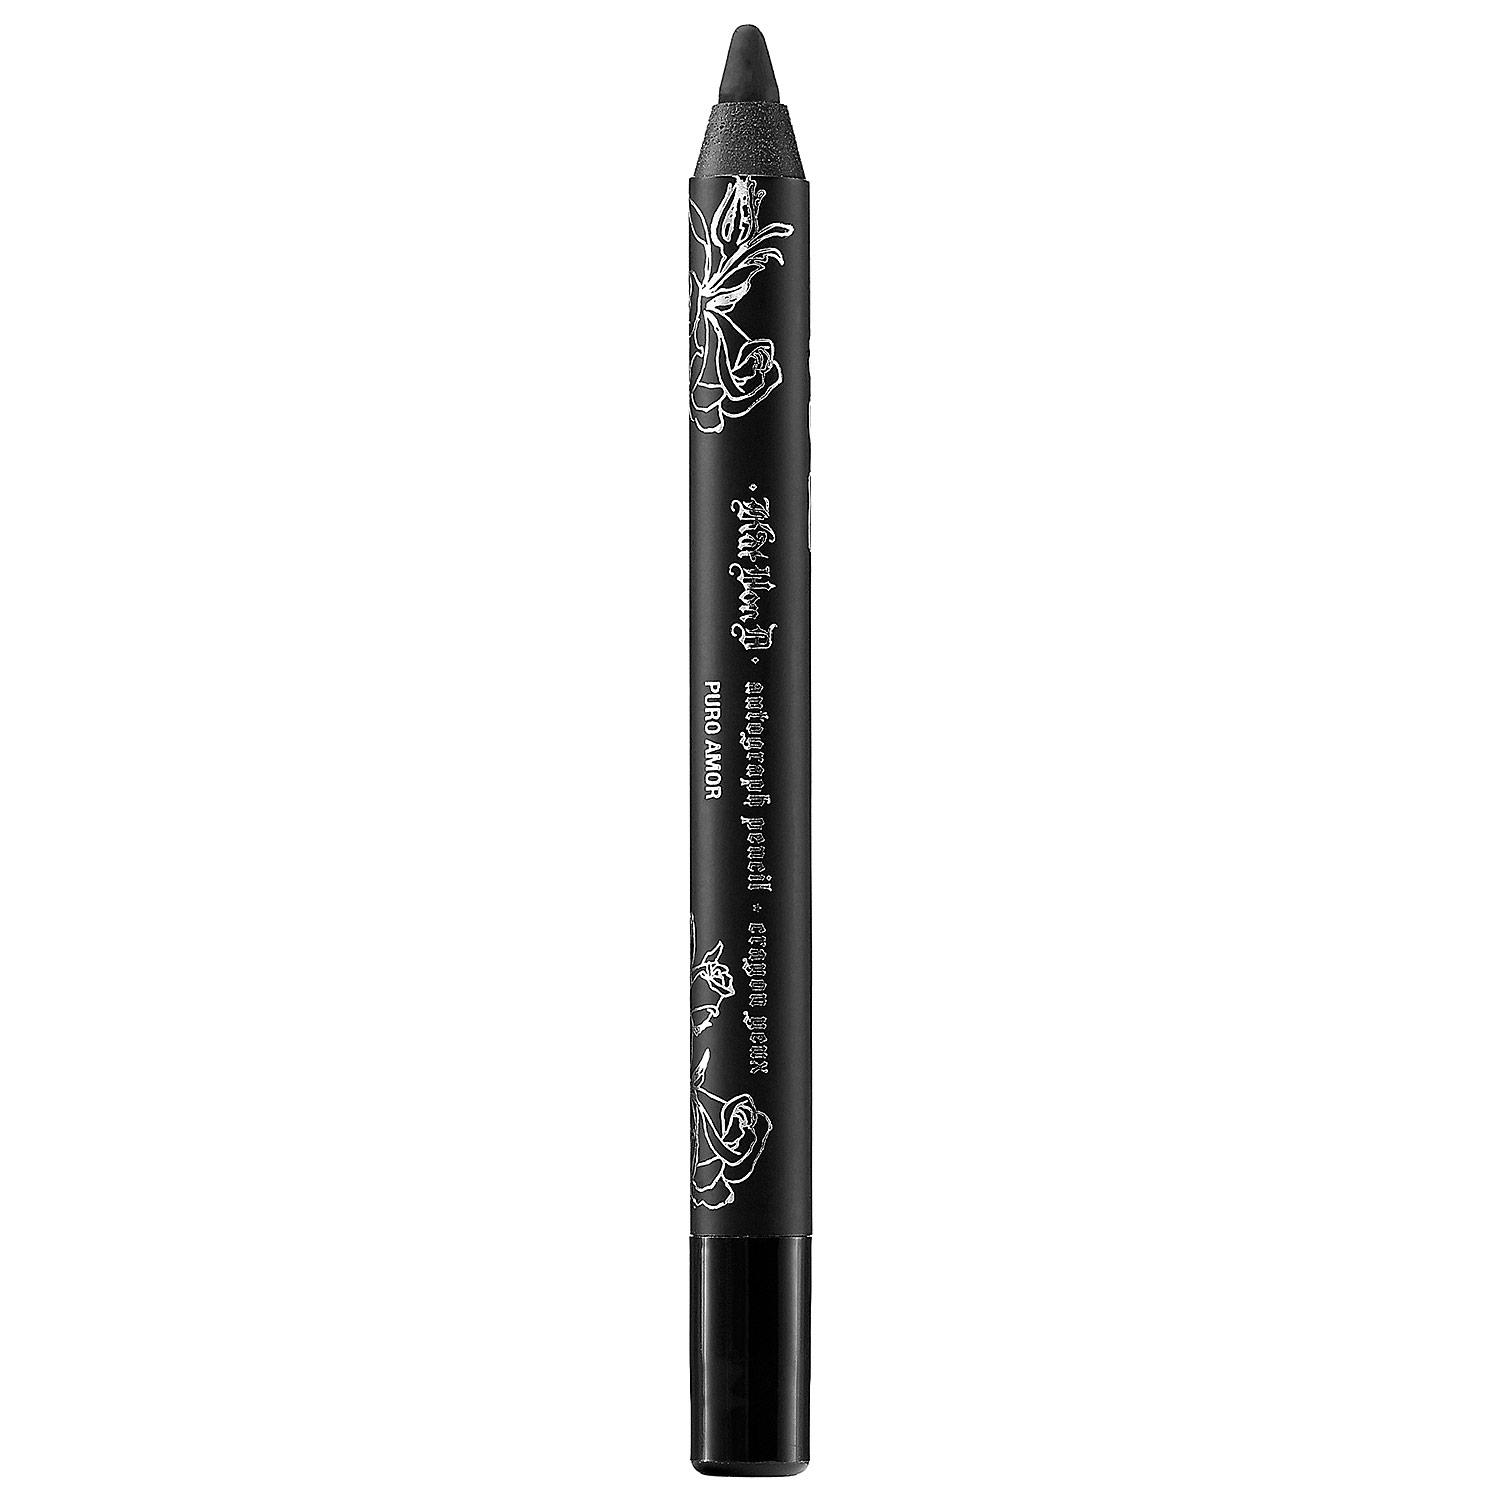 Kat Von D Autograph Eyeliner Pencil Puro Amor Mini 0.8g